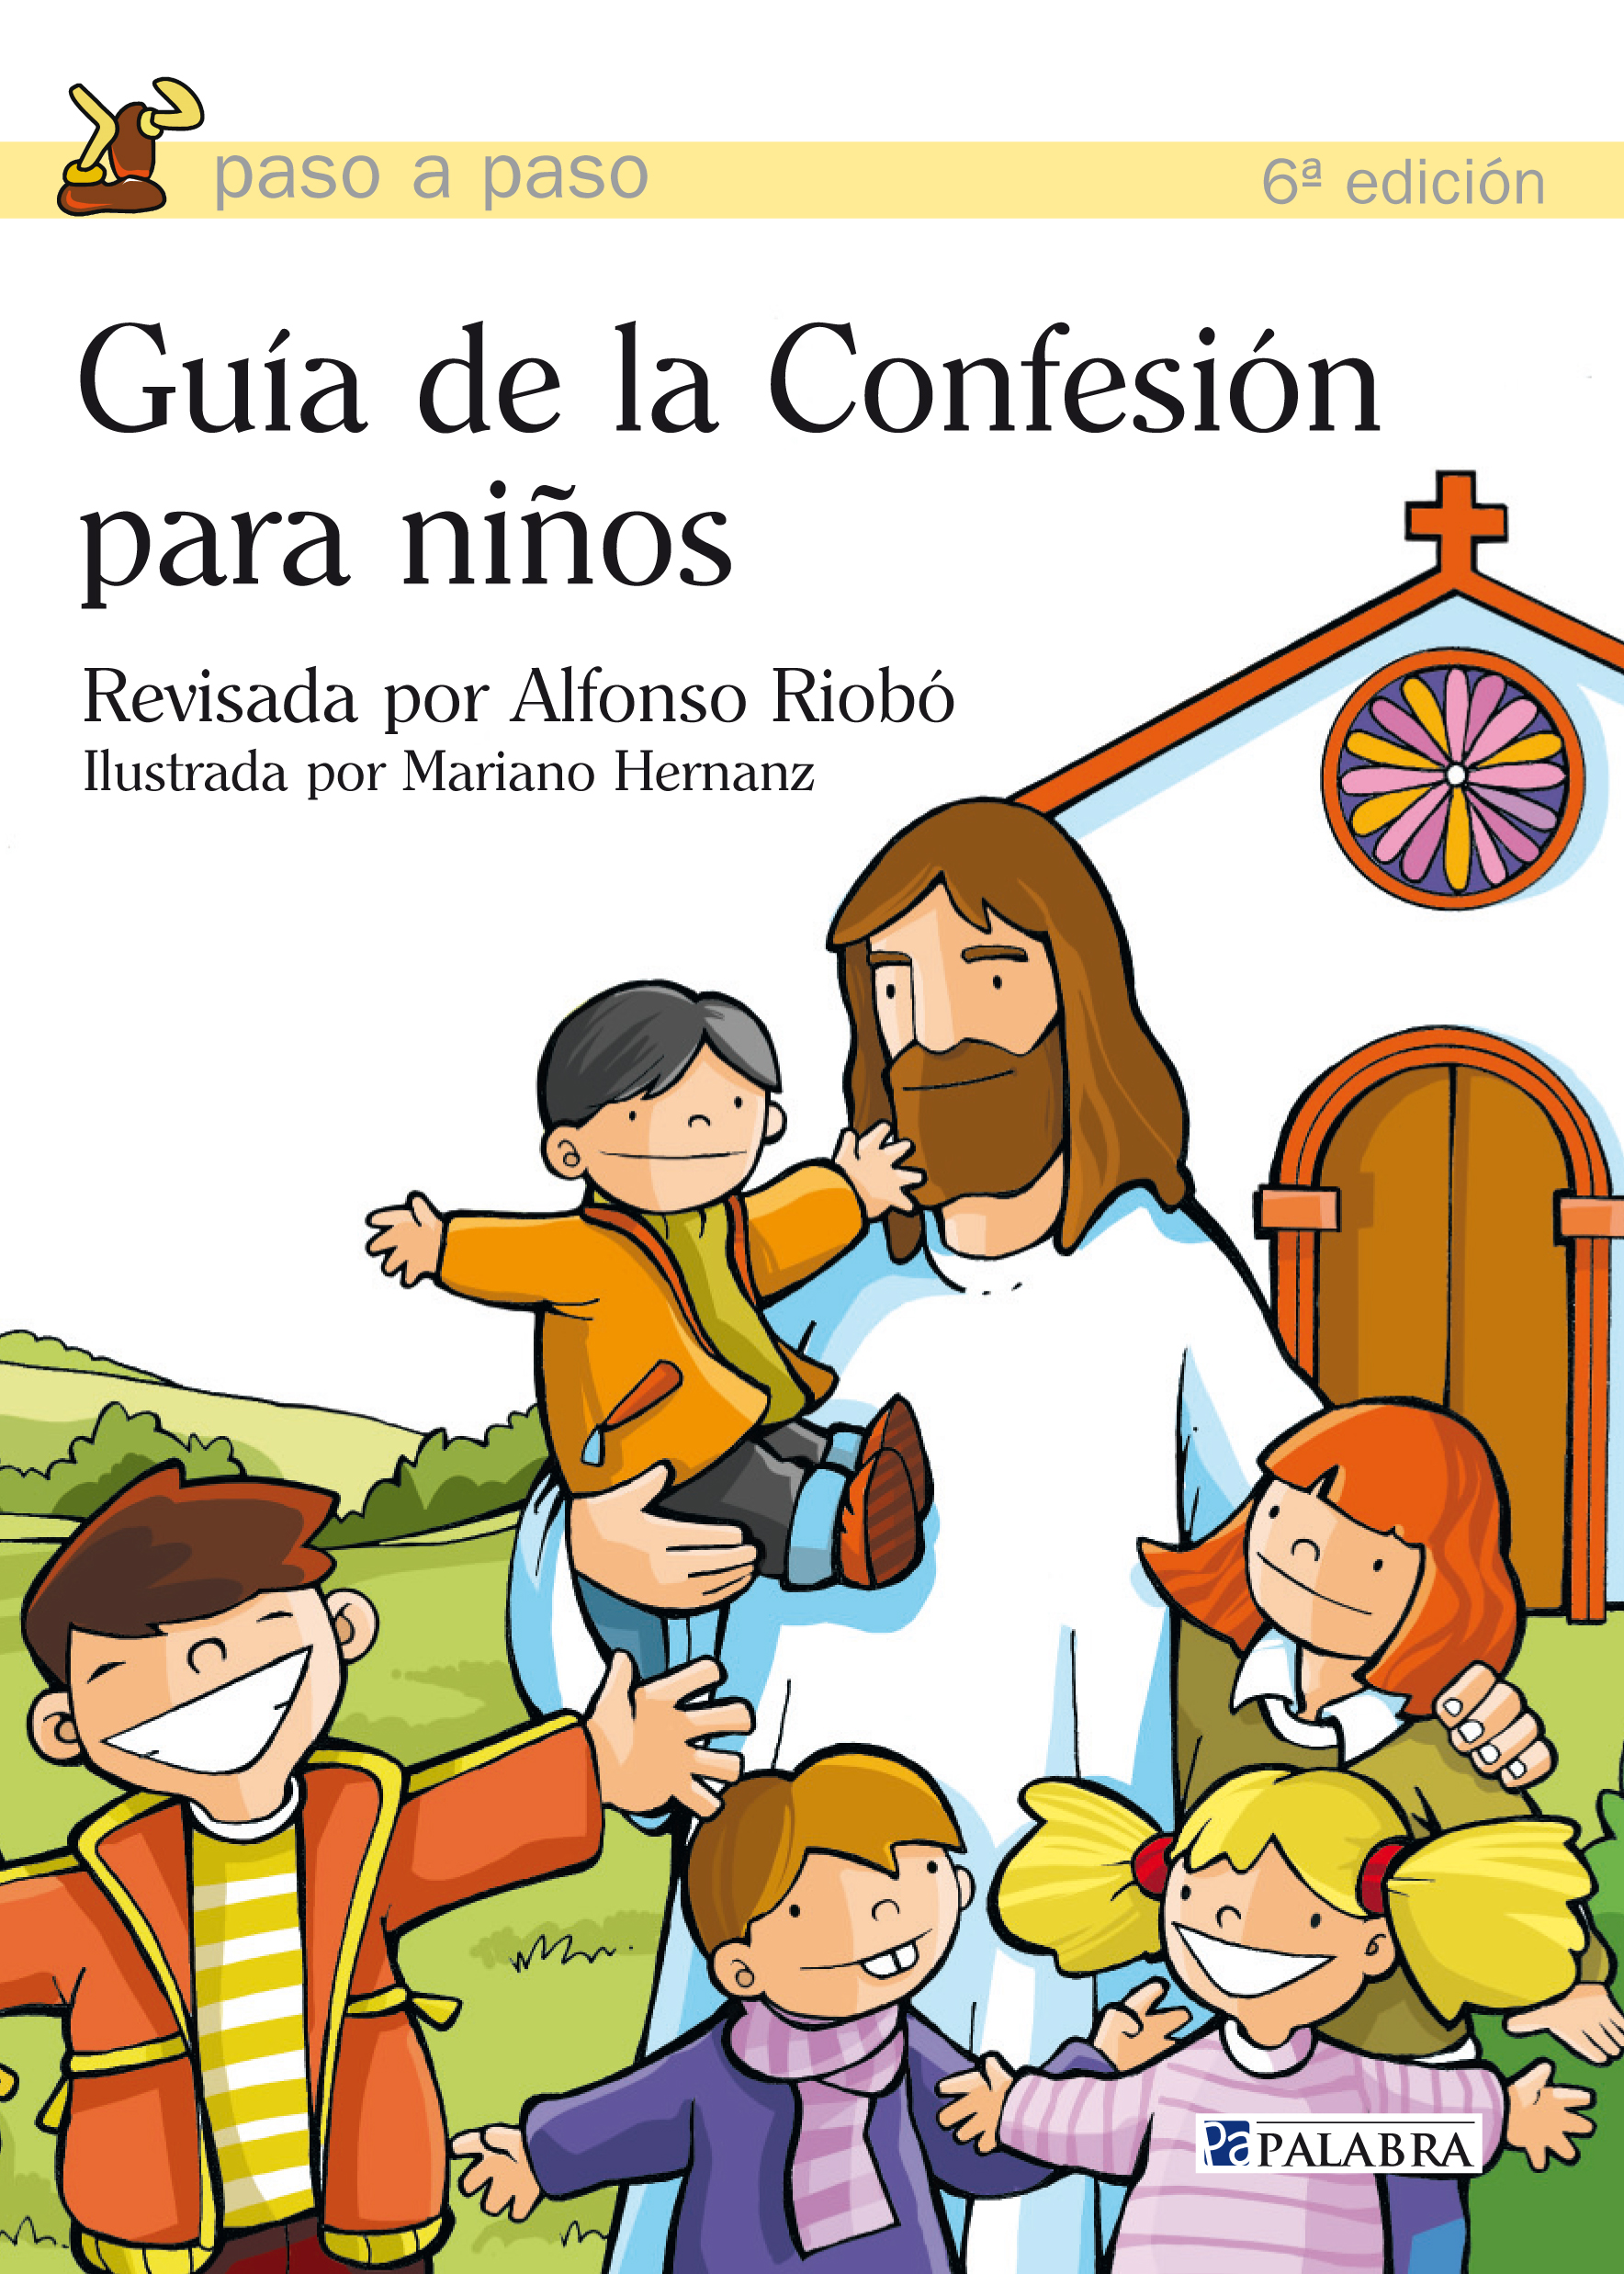 Guía de la Confesión para niños :: Libelista